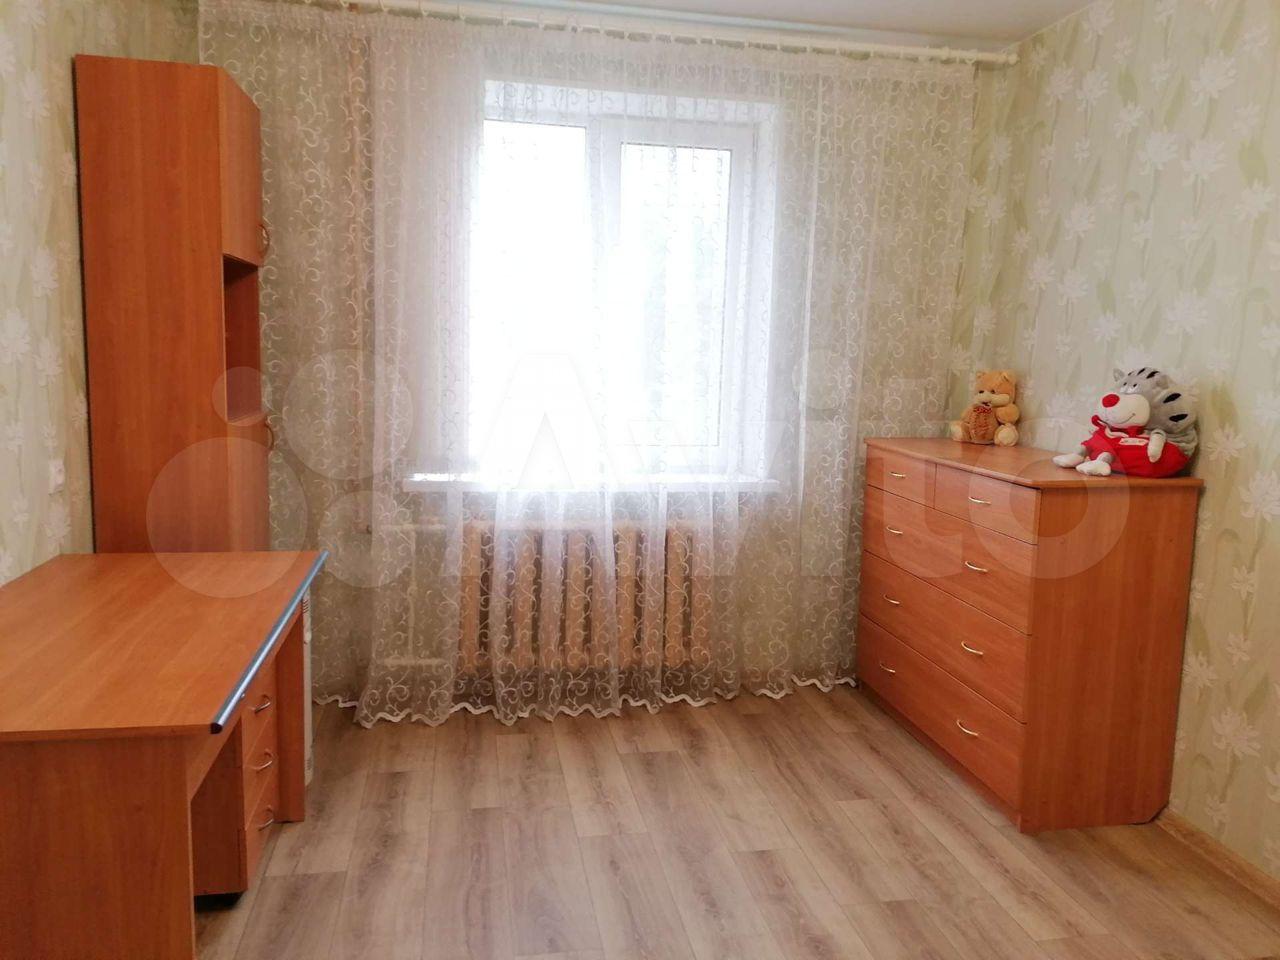 Купить квартиру в ново савиновском районе казани. Гаврилова проспект Ямашева. Квартира на Фатыха Амирхана снять посуточно.